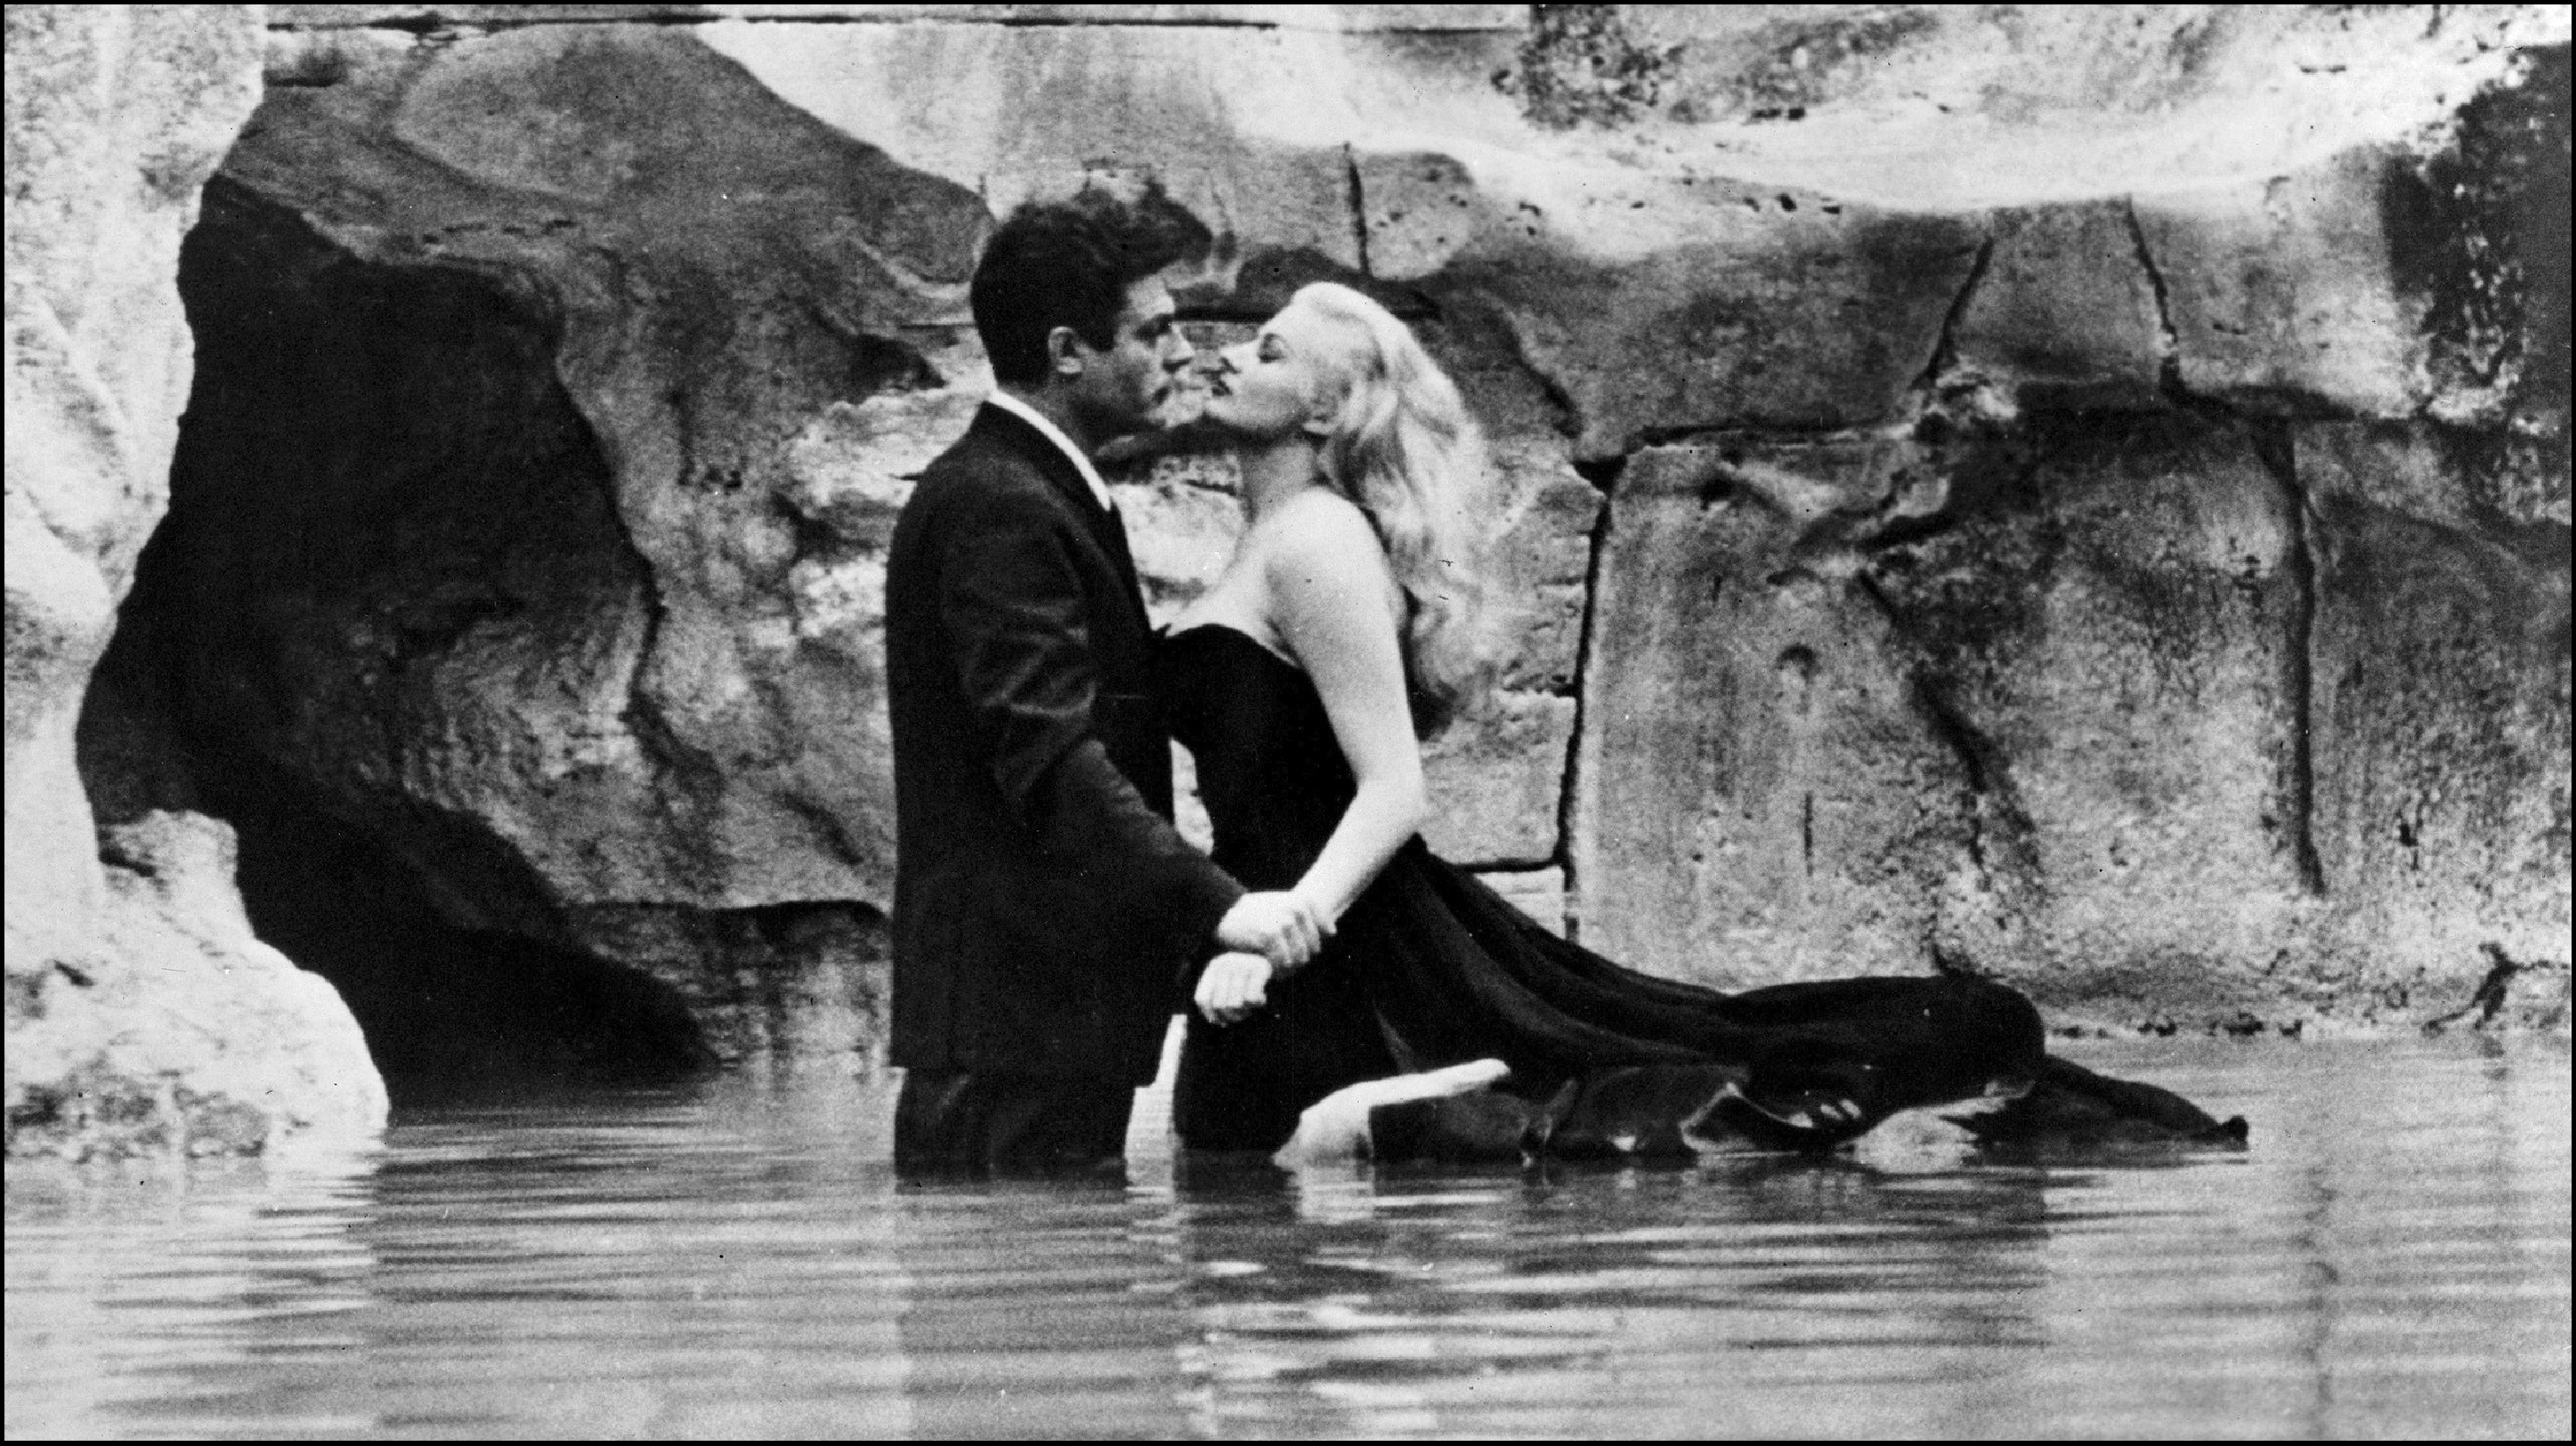 Il Secolo d’Italia e la campagna di stampa contro “La dolce vita” di Fellini